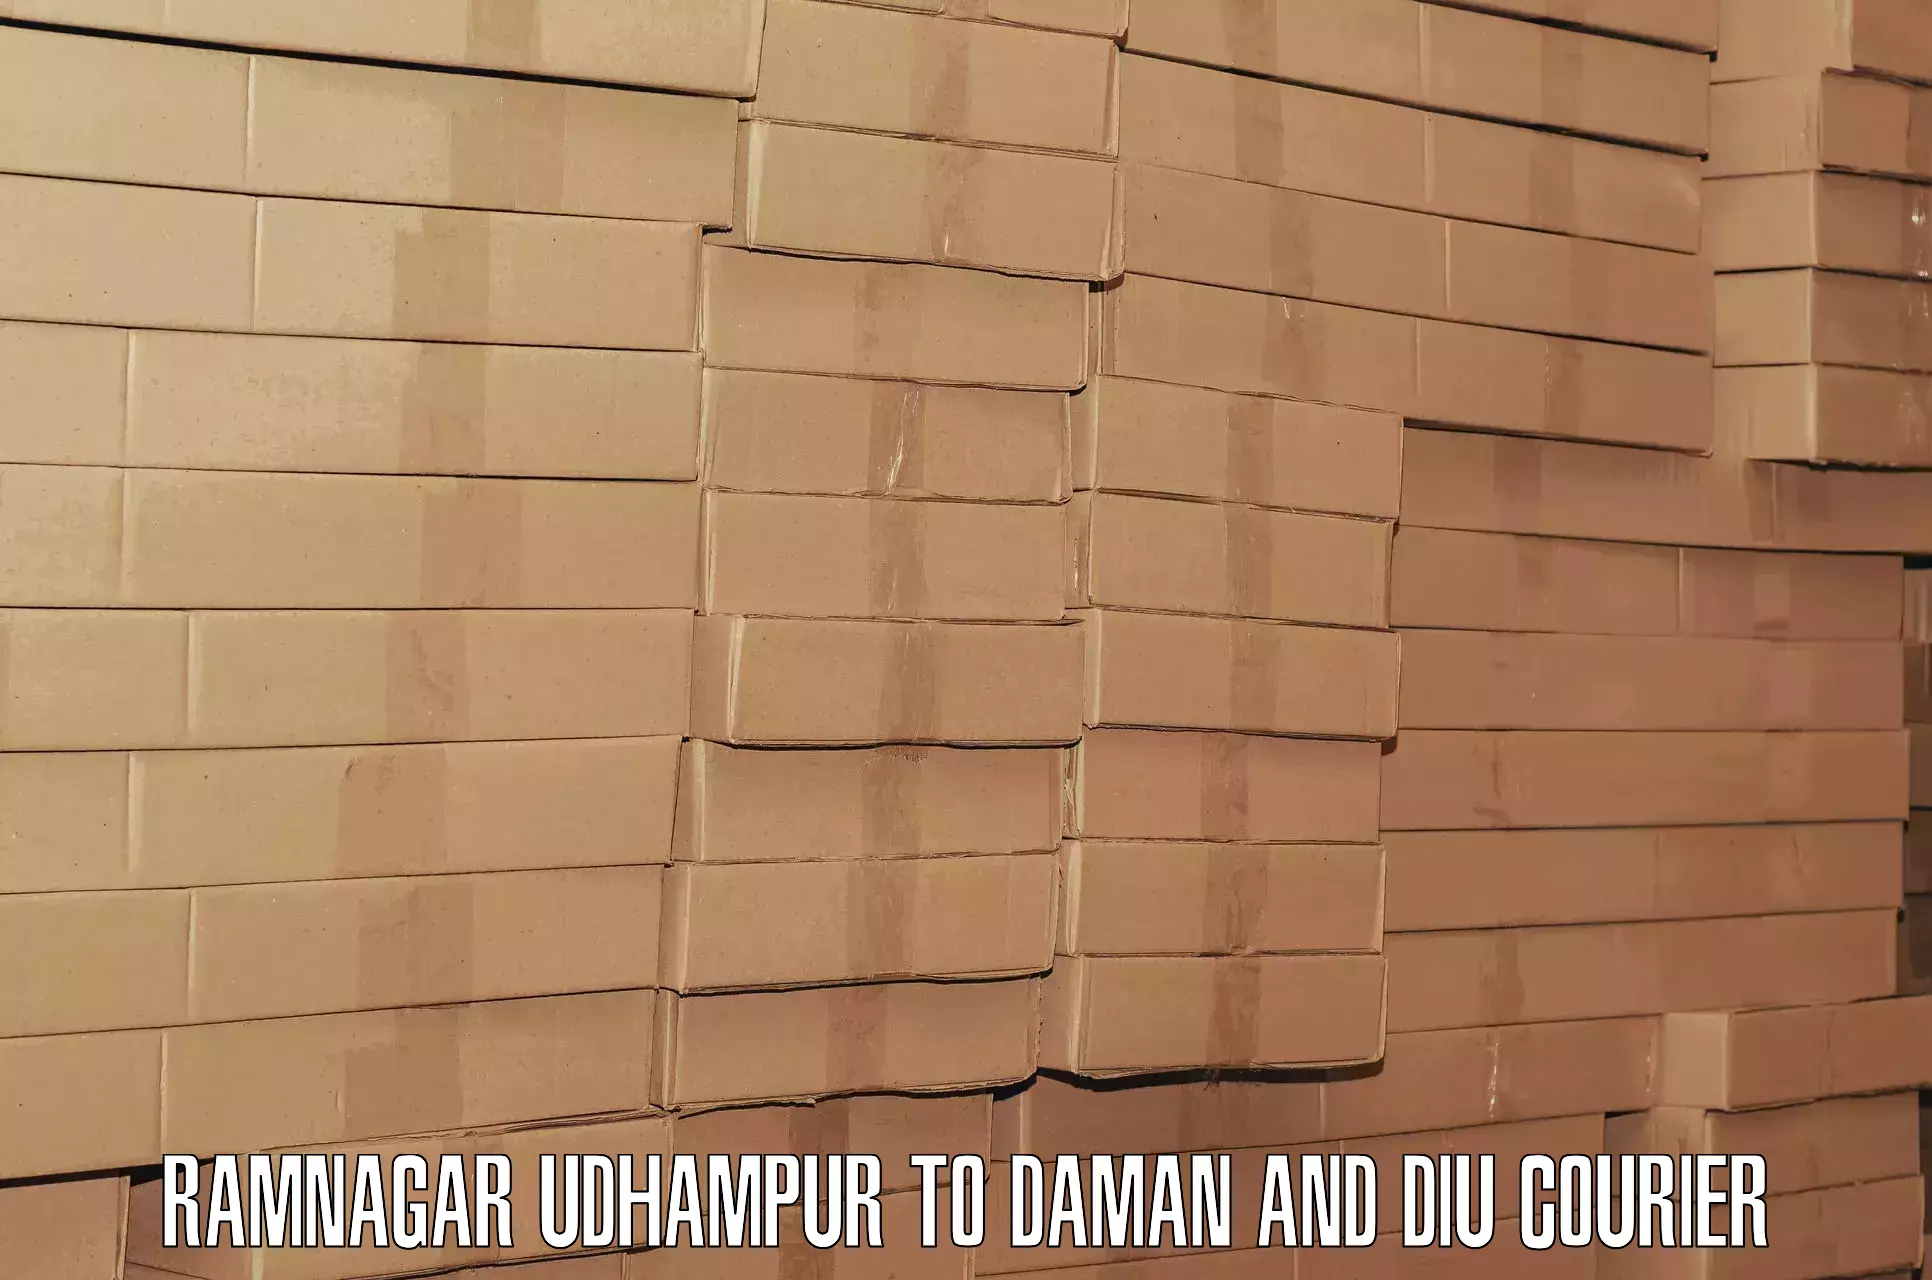 Comprehensive baggage service Ramnagar Udhampur to Daman and Diu